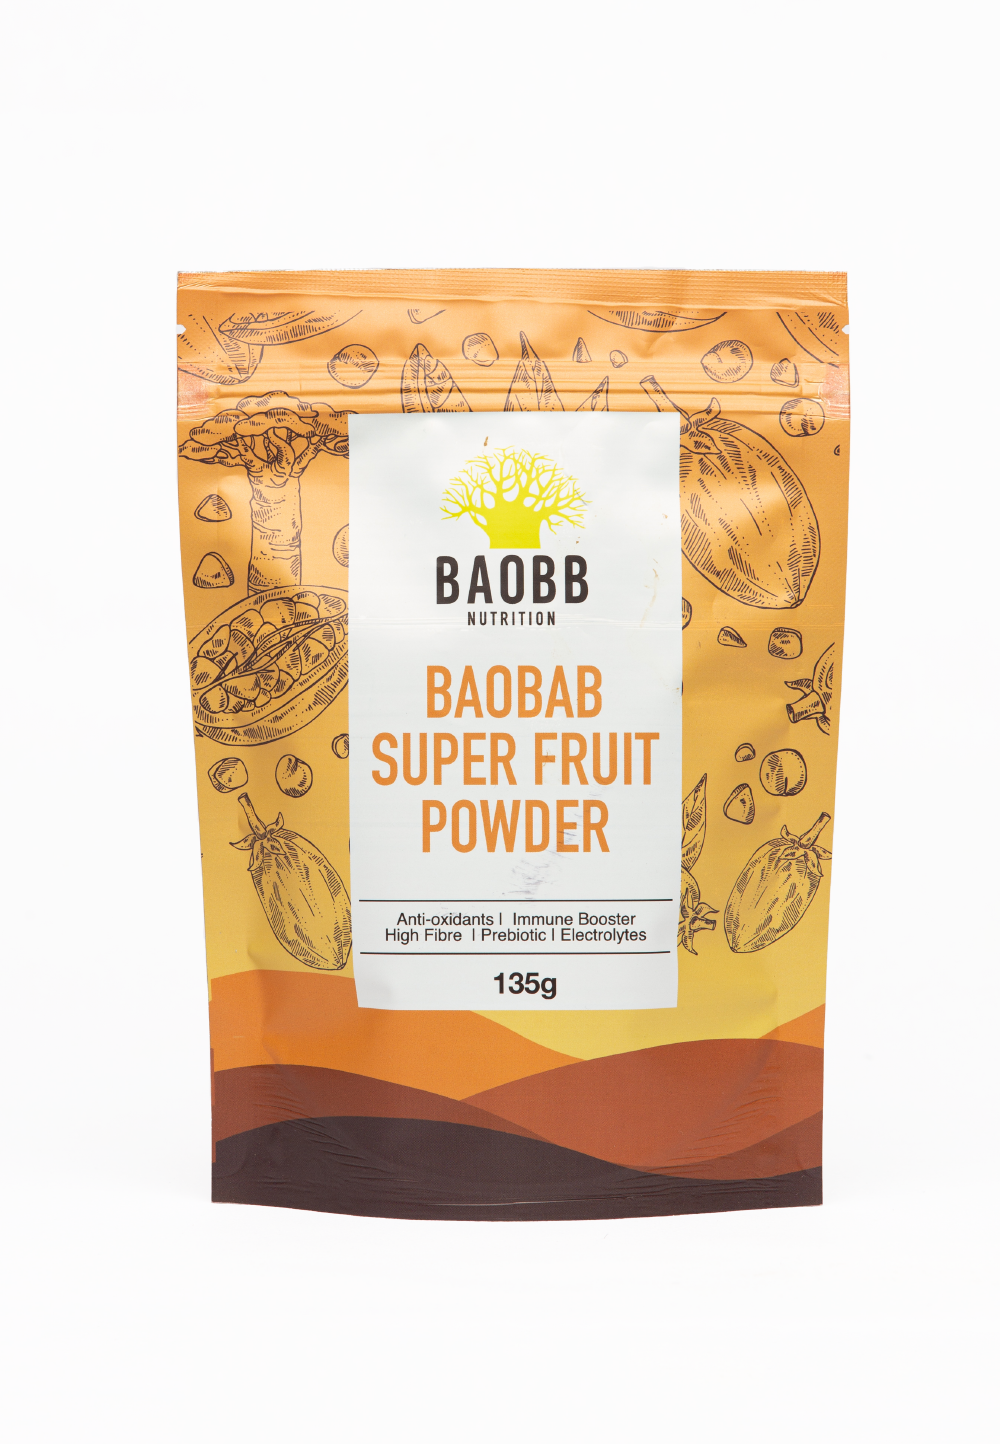 Baobab Super Fruit Powder